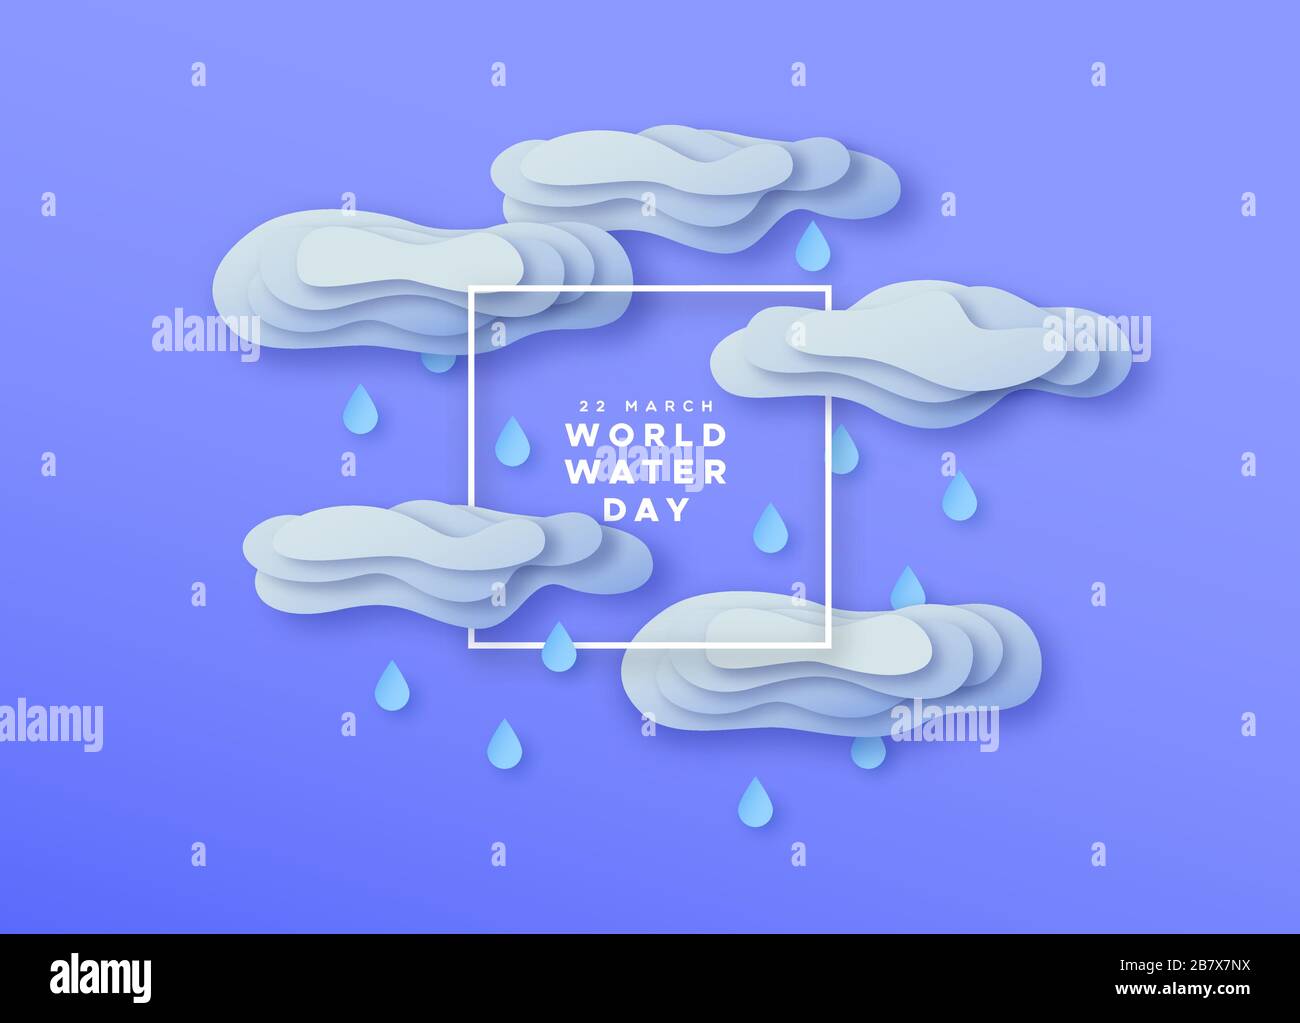 Weltwassertag Papier Schnitt Illustration von 3D-Regenwolken mit ausgeschnittenen Schichten für den Klimawandel oder das Regenkonzept. Umwelt hilft papercut Campa Stock Vektor